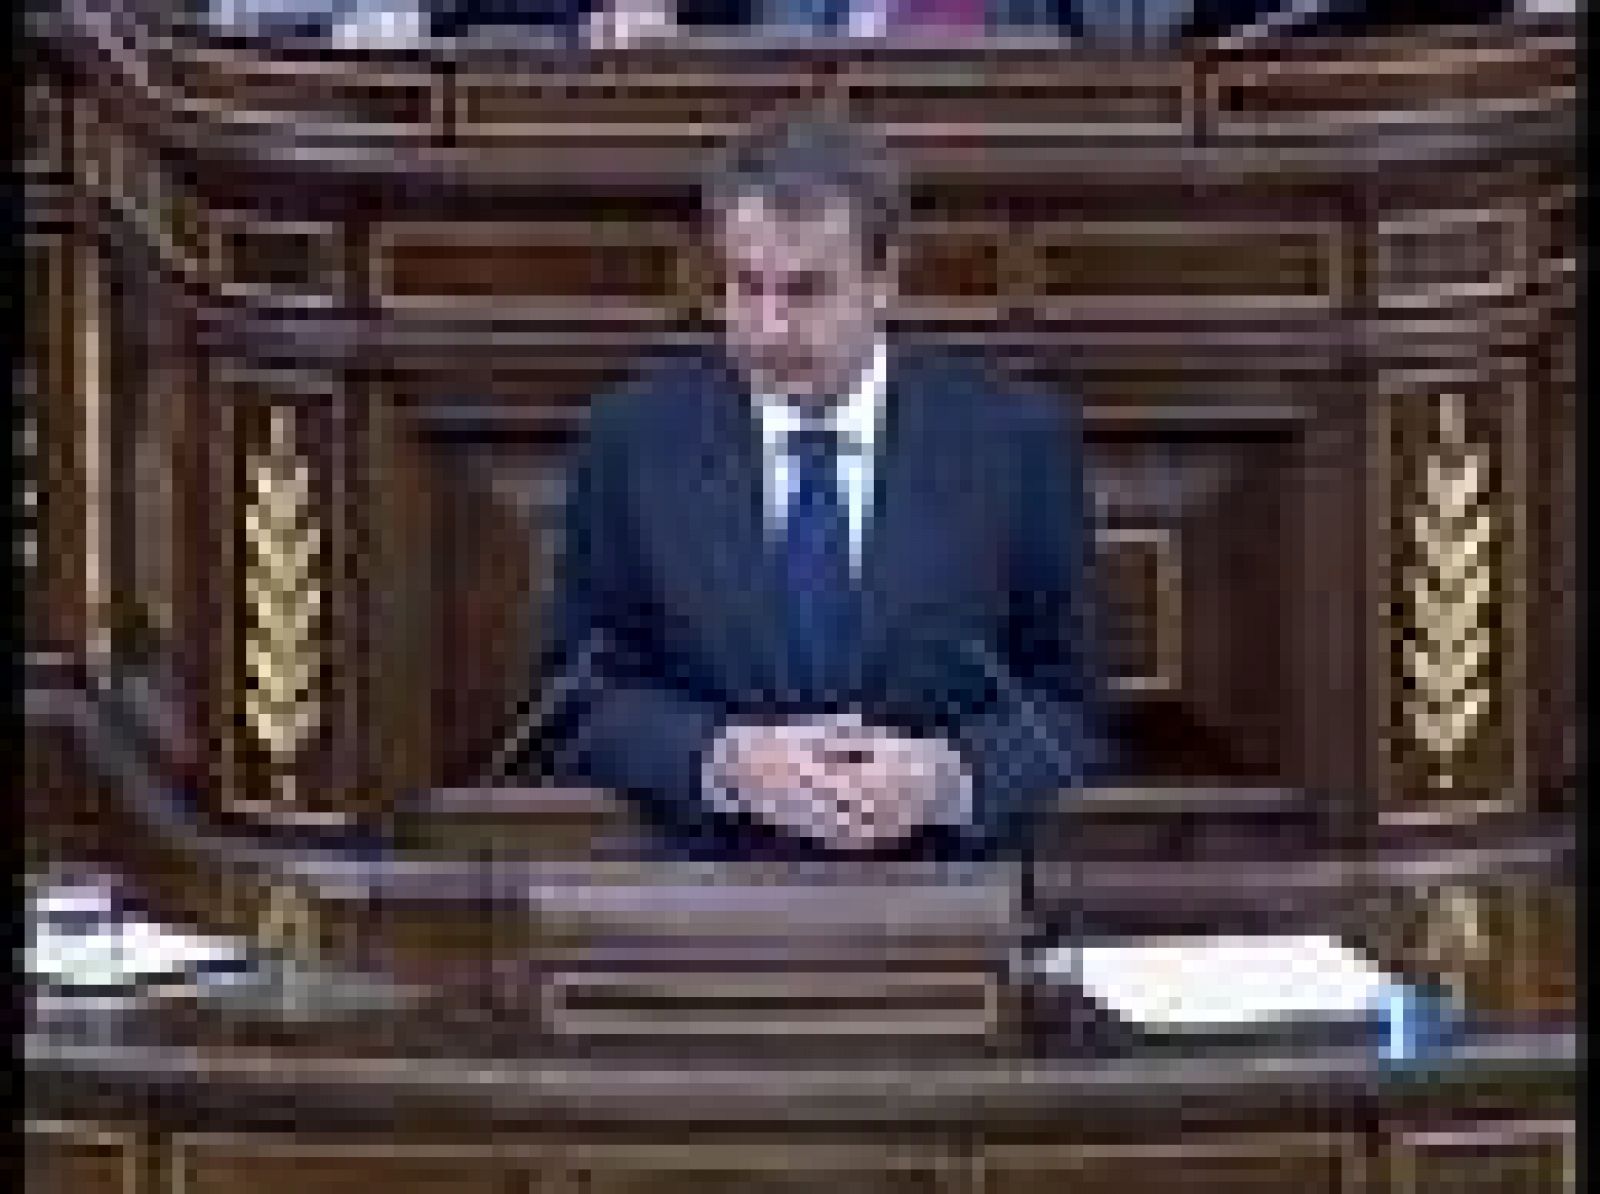 El presidente del Gobierno ha vuelto a tender la mano a la oposición y especialmente al Partido Popular para sumar esfuerzos, y después Rajoy le ha hecho otraotra propuesta.